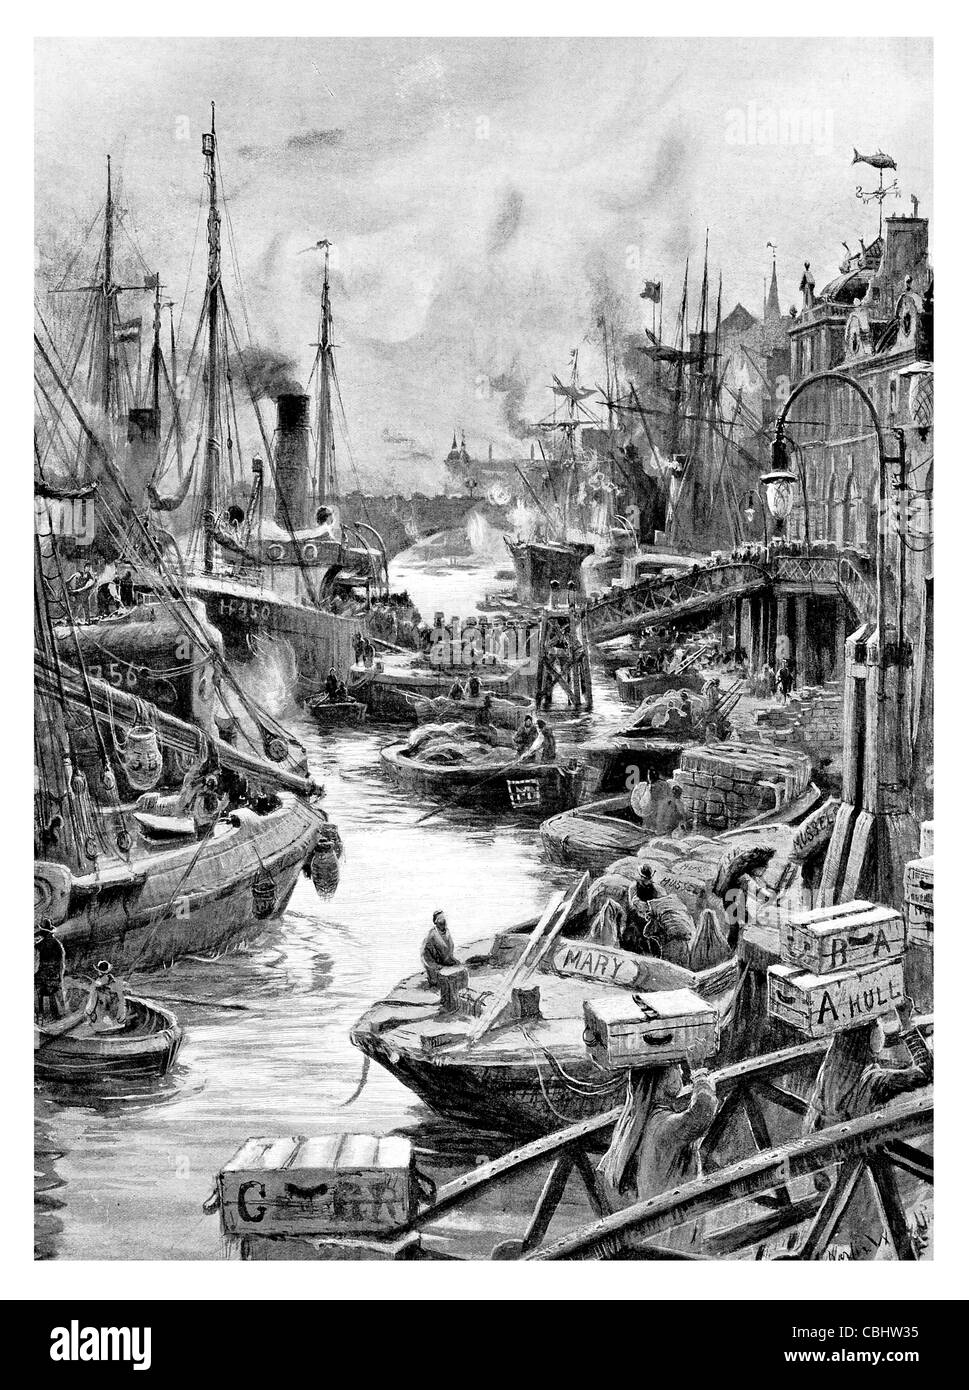 Port de mer, la charge est de Londres le Marché aux poissons de Billingsgate Angleterre de matières en vrac, la pêche d'un navire de commerce Banque D'Images